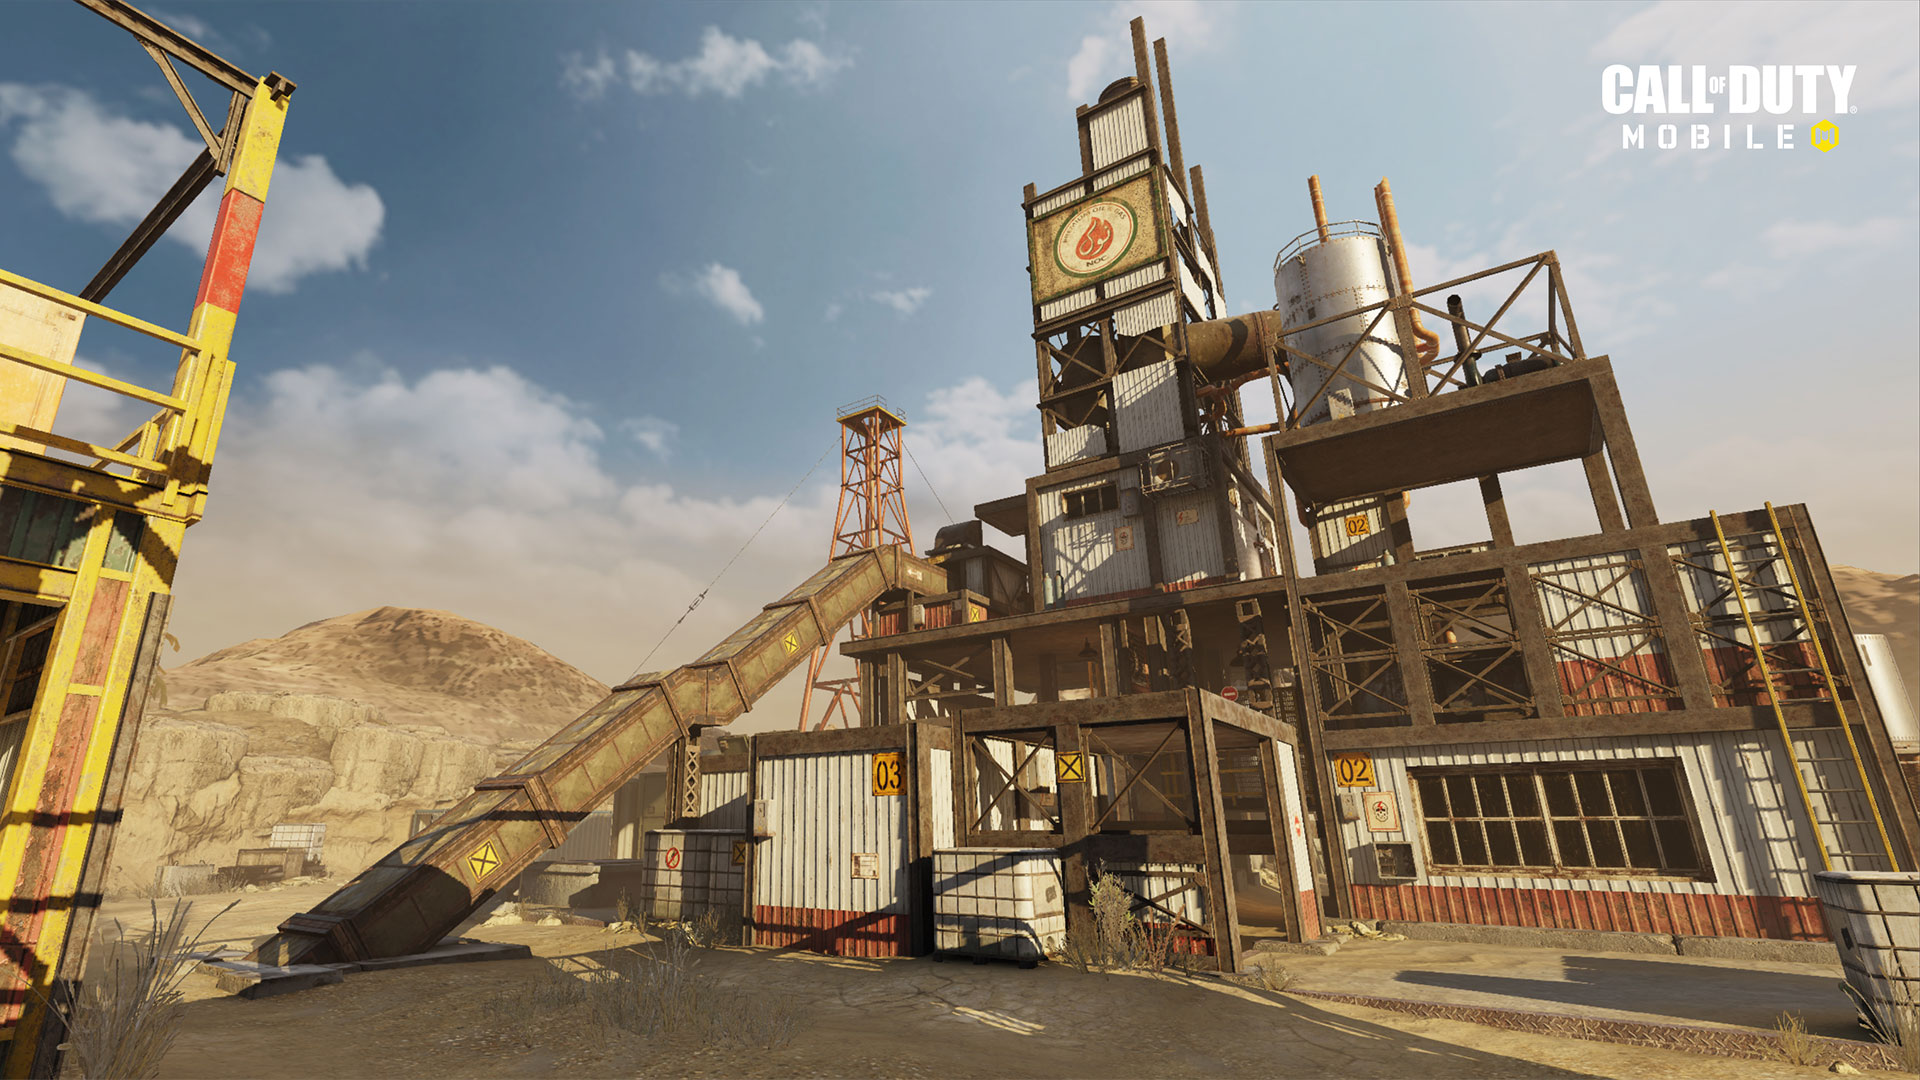 الإصدار 1.0.12 من "Call of Duty: Mobile" متاح الآن بشكل مباشر لتقديم الدعم للموسم التالي "ذات مرة في الصدأ" ، وخرائط جديدة ، وموسم جديد مصنّف ، والمزيد 1